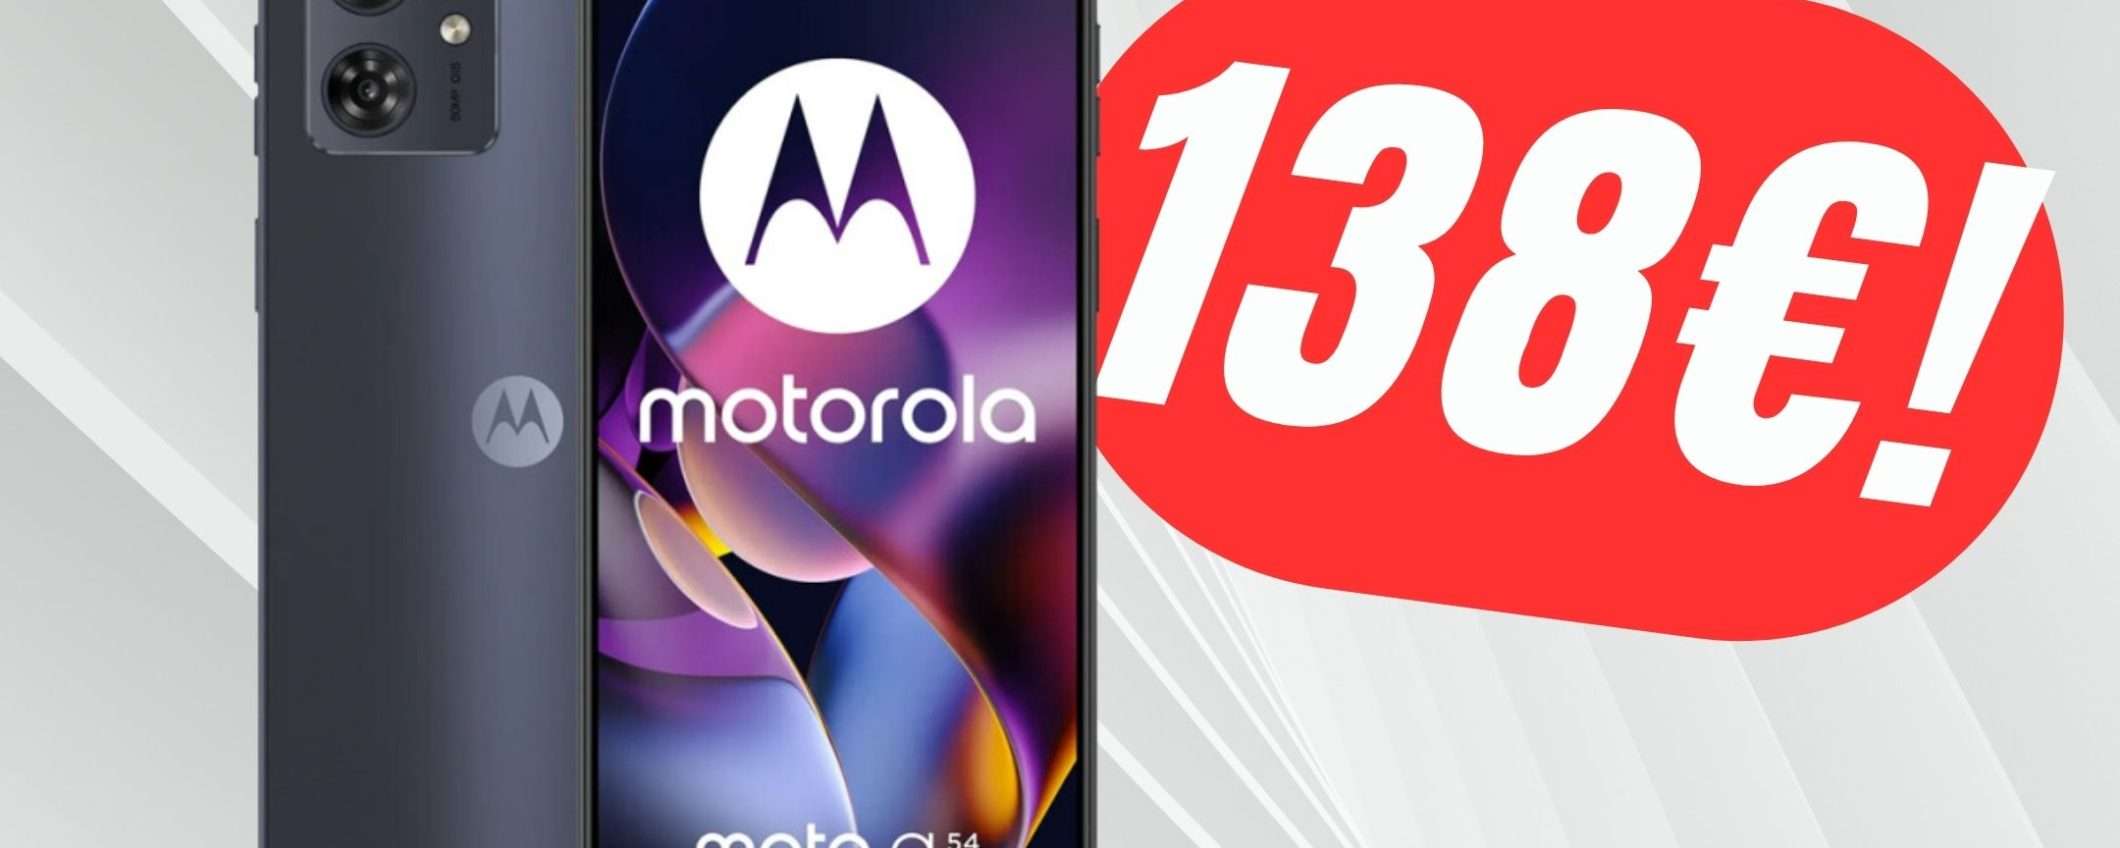 Prezzo incredibile per il Motorola Moto G54 5G con il COUPON eBay!